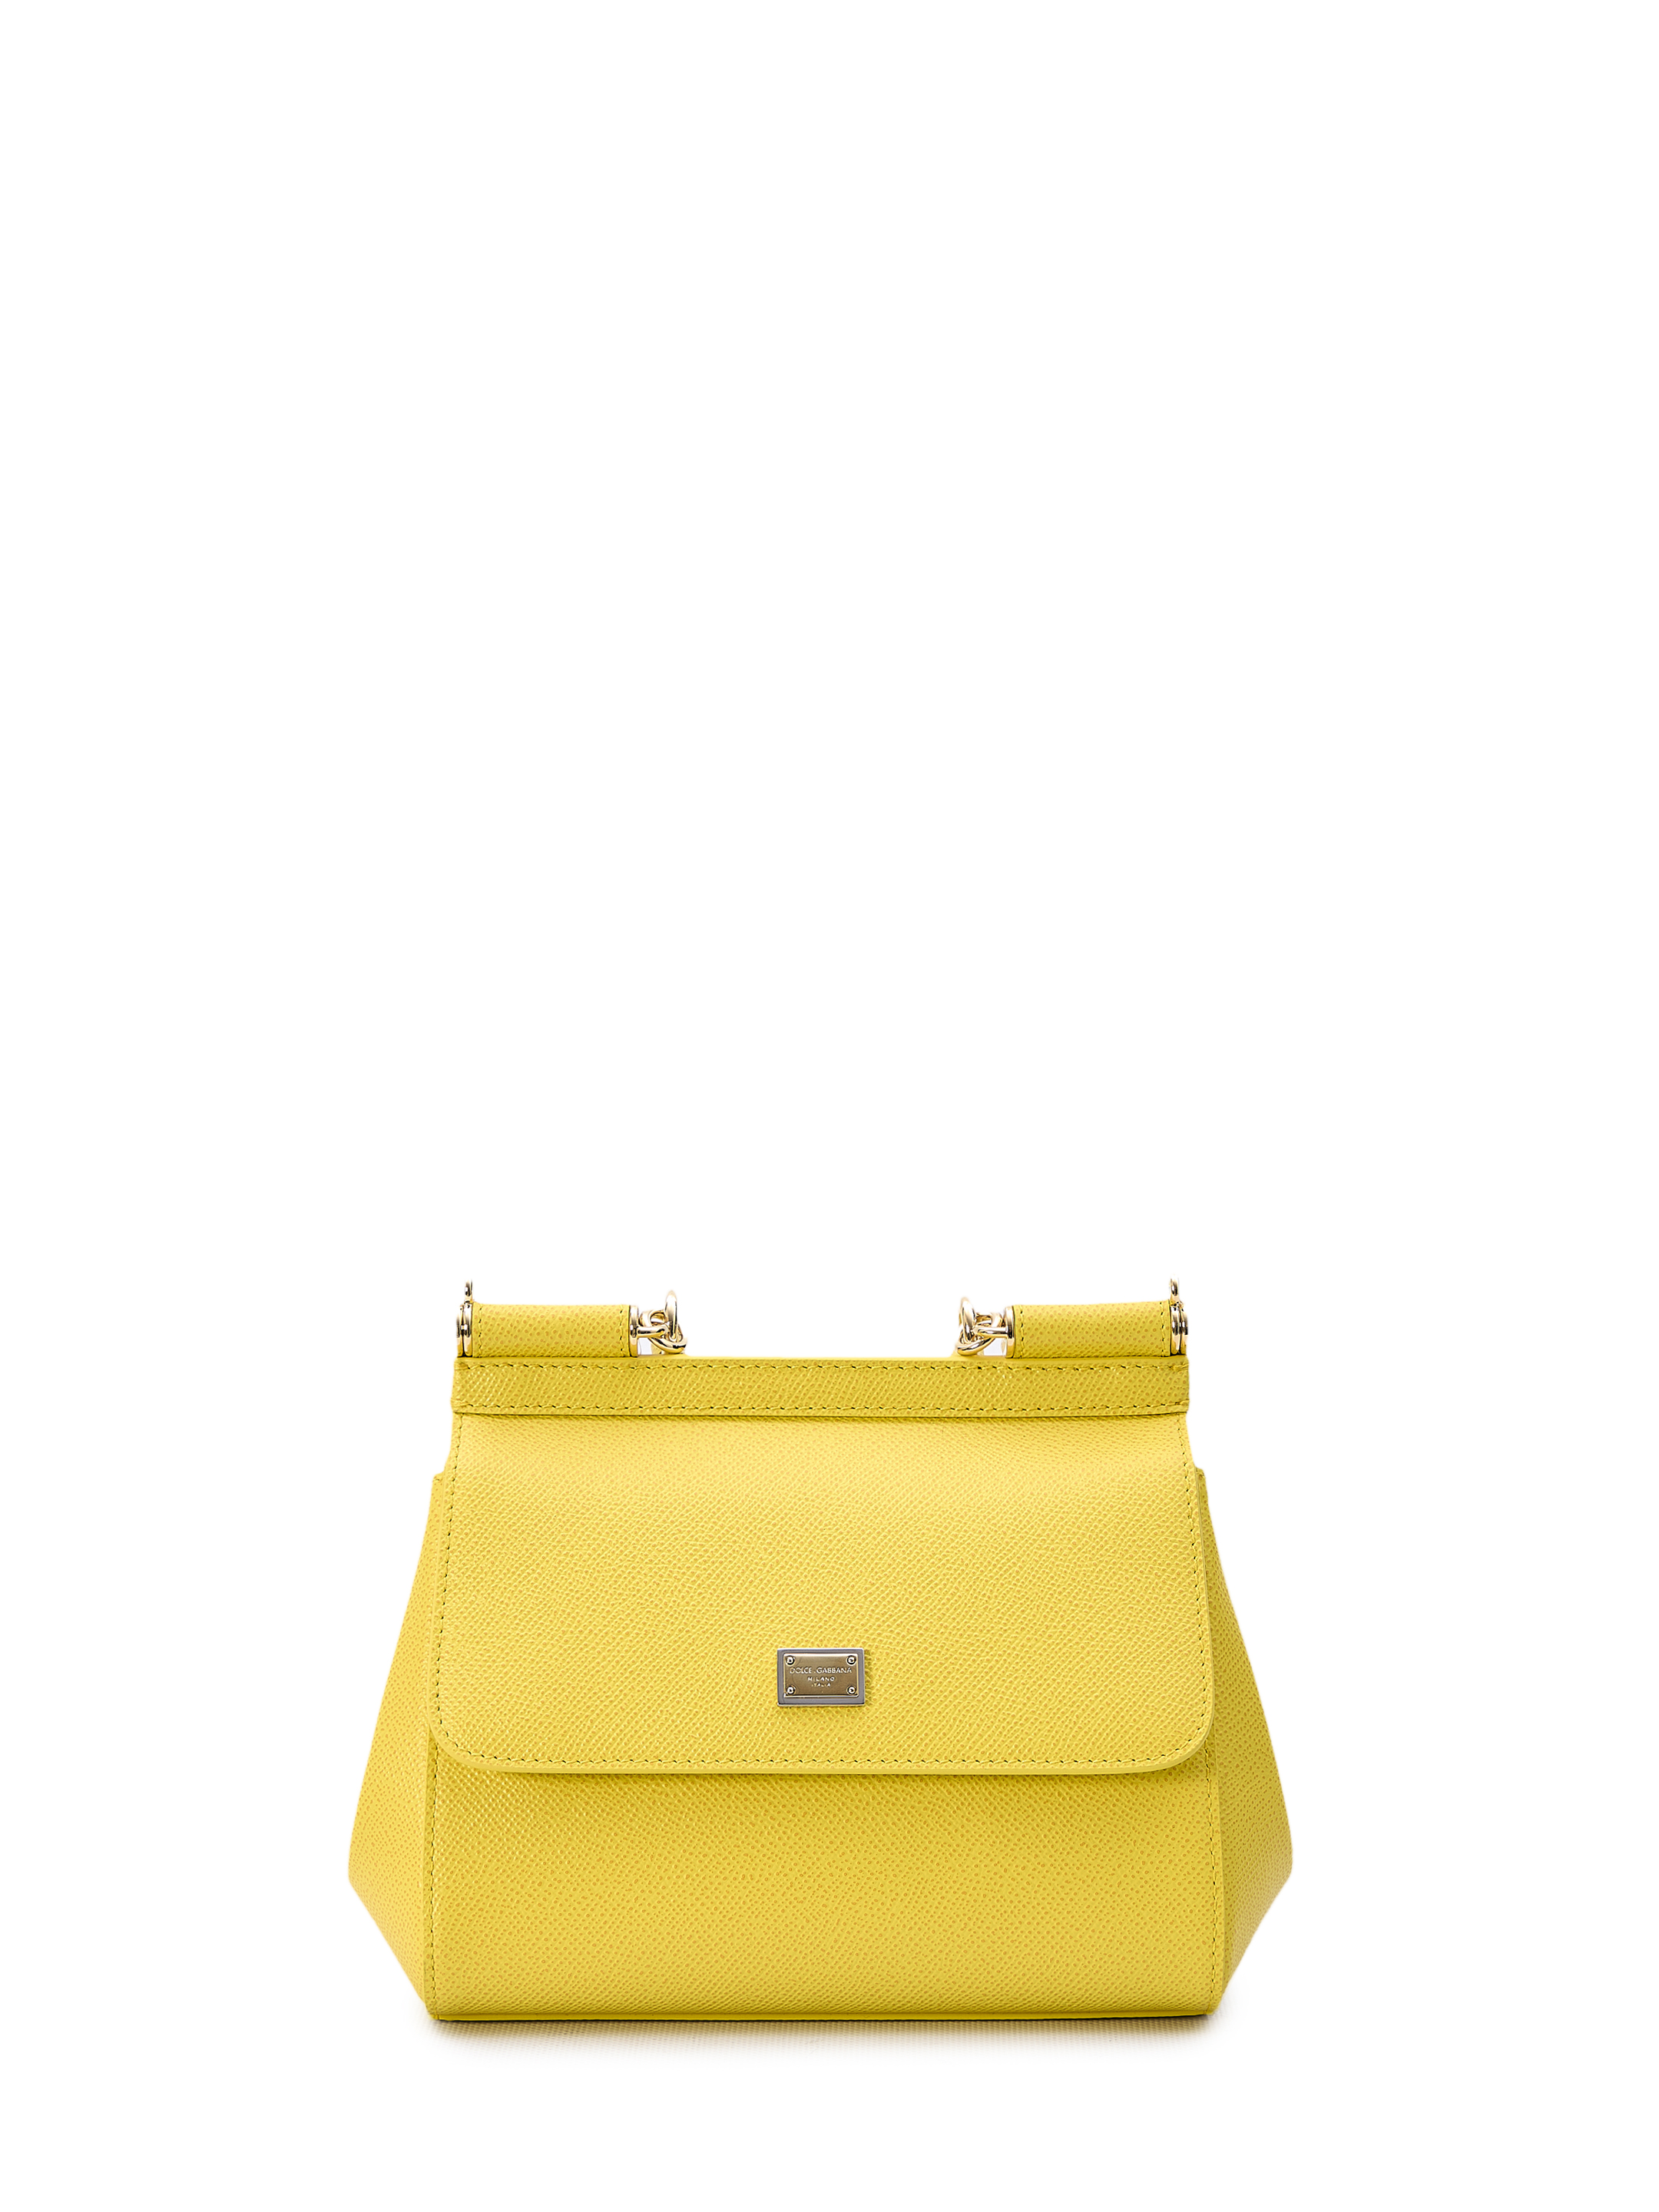 Сумка Dolce&Gabbana Small Sicily, желтый дорожная сумка с одним отделением и съемным ремнем blackwood albion black